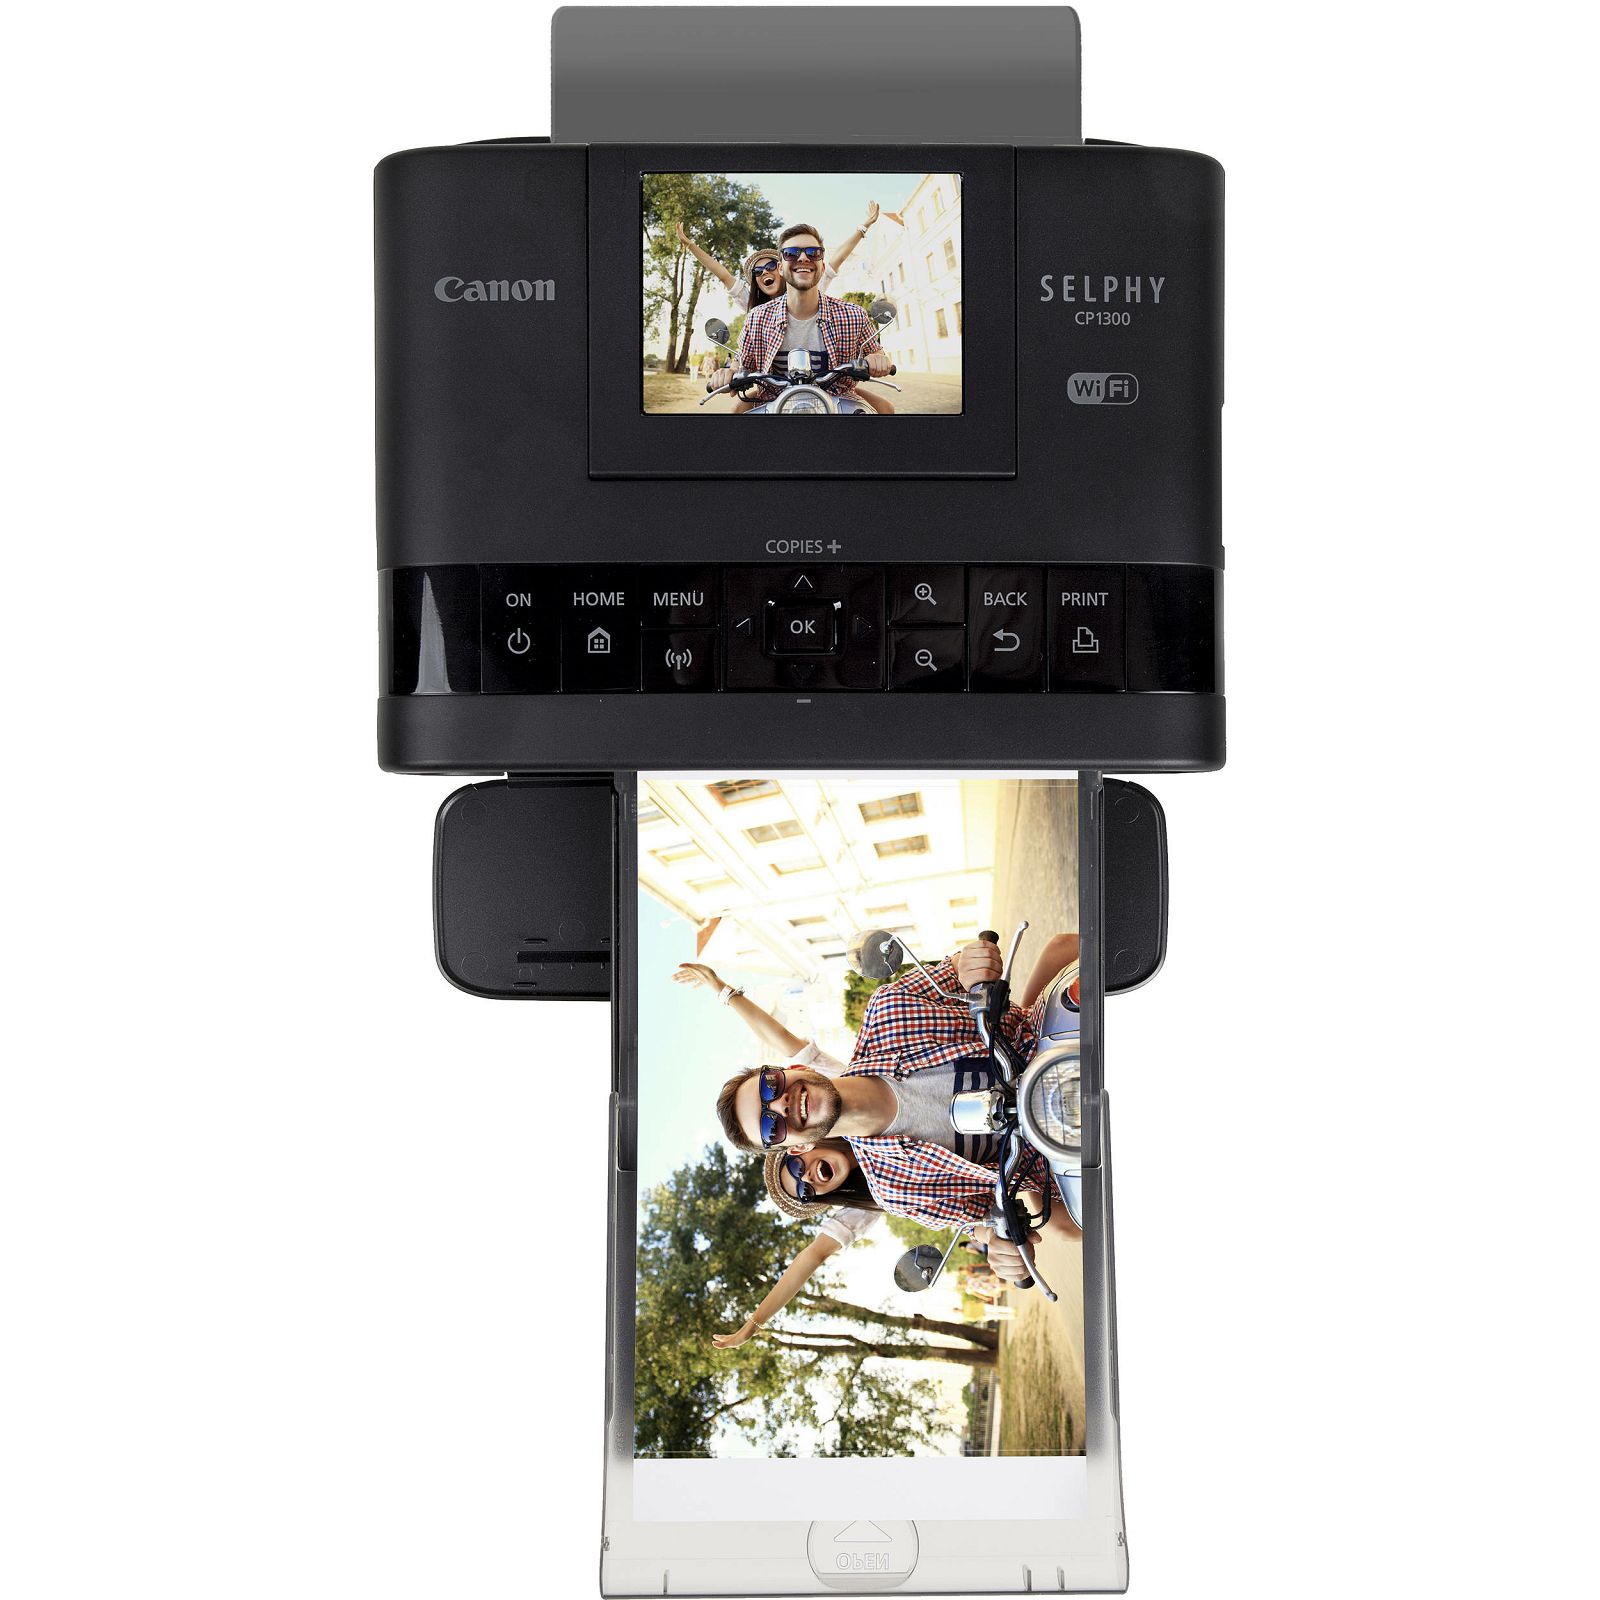 Canon Selphy CP1300 Black BK EU20 crni termosublimacijski instant foto printer (2234C002AA)